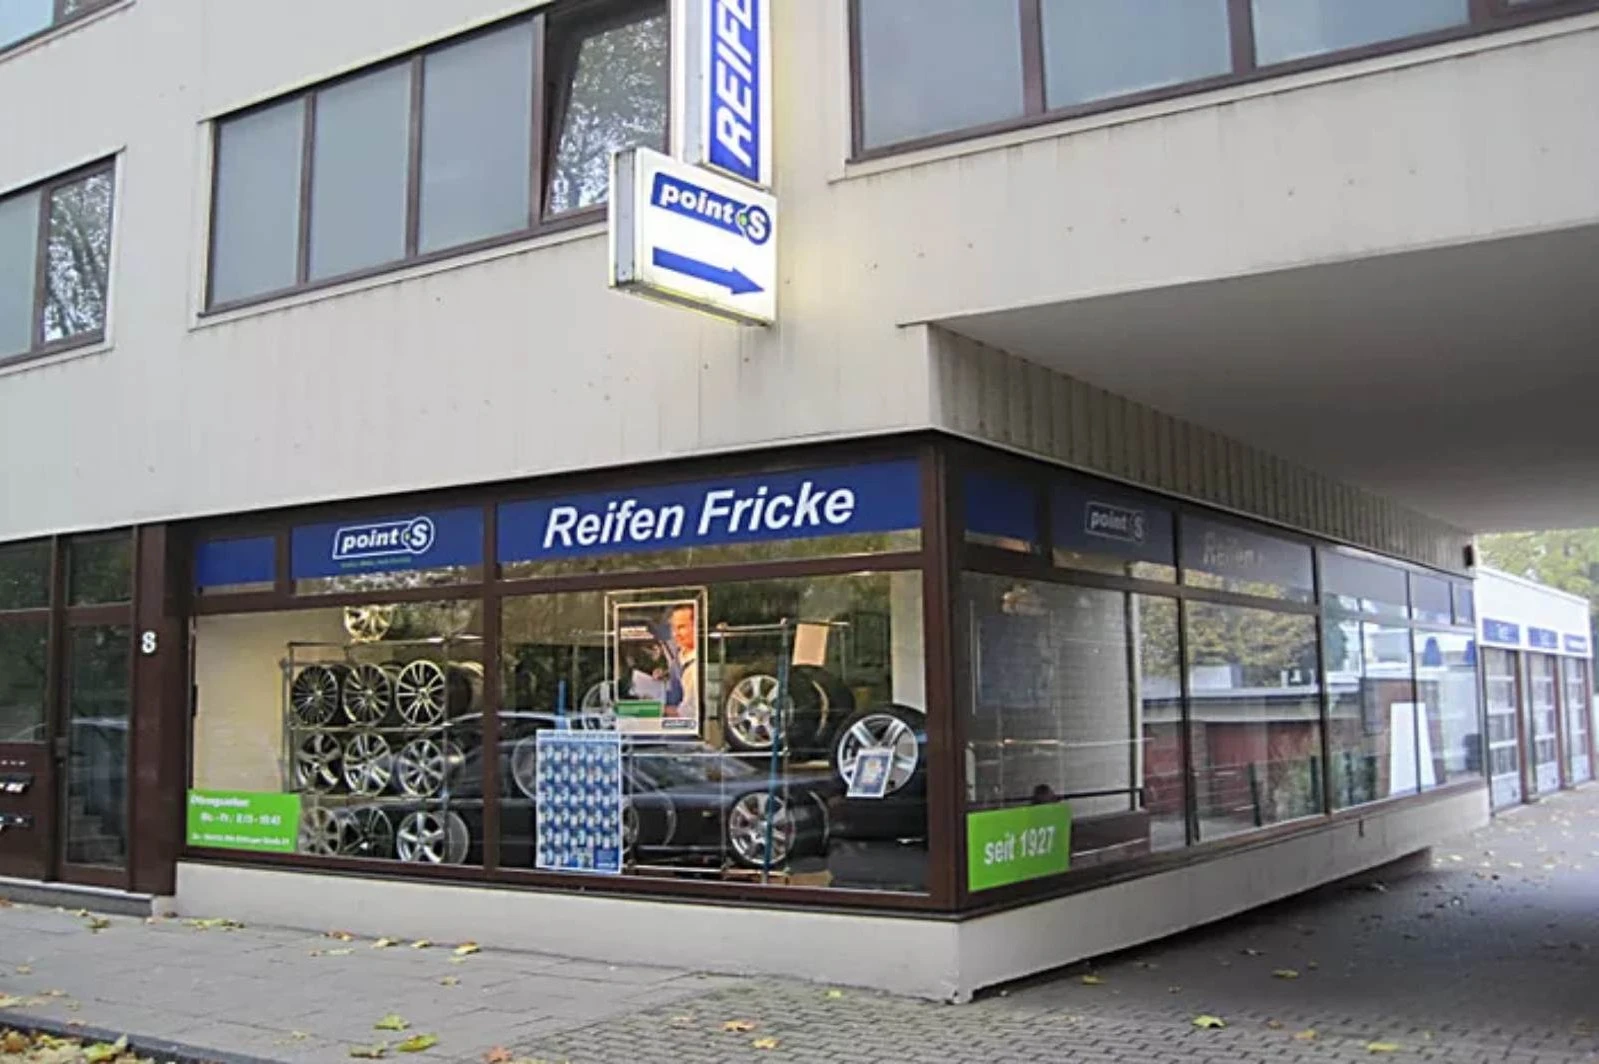 Reifen Fricke GmbH point S Reifen Handels GmbH